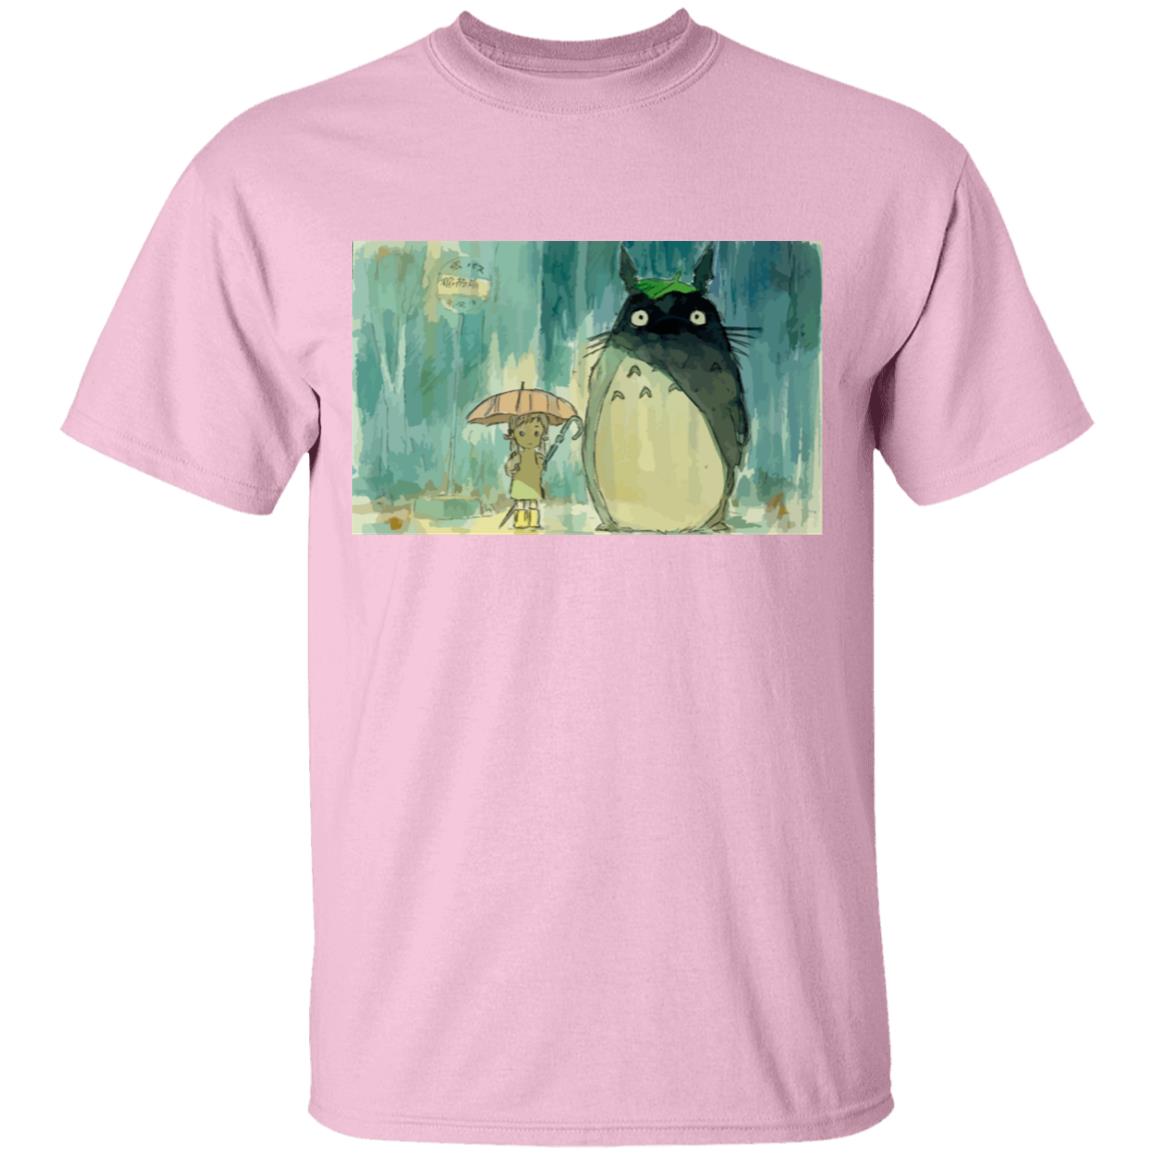 My Neighbor Totoro Original Poster T Shirt Unisex Ghibli Store ghibli.store